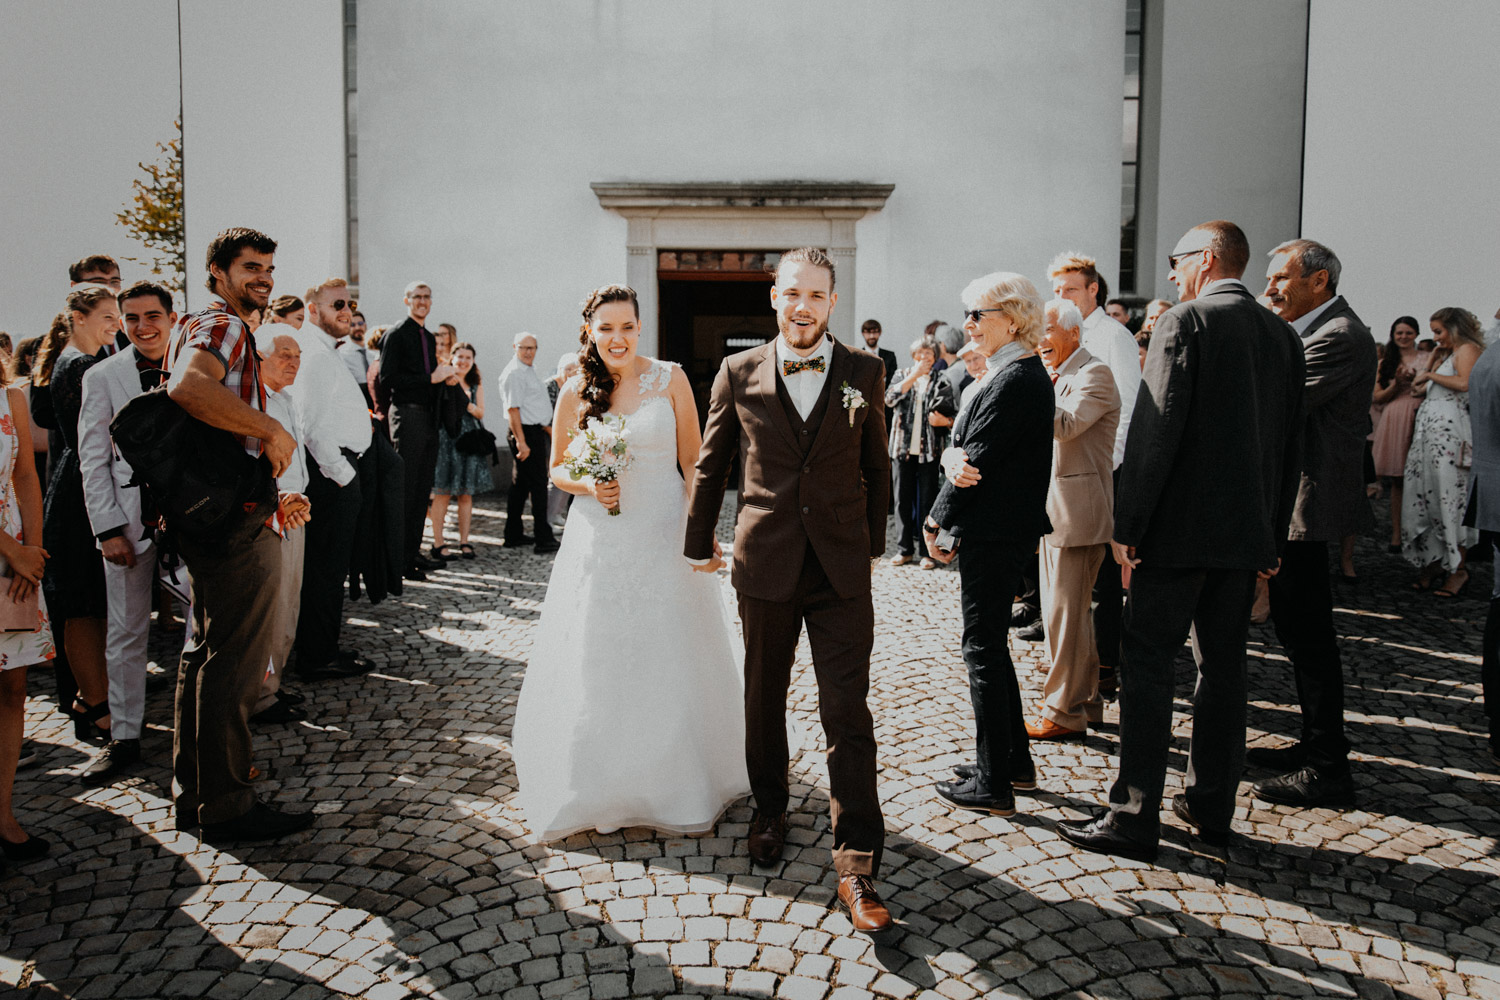 Wedding photographer in Switzerland church wedding